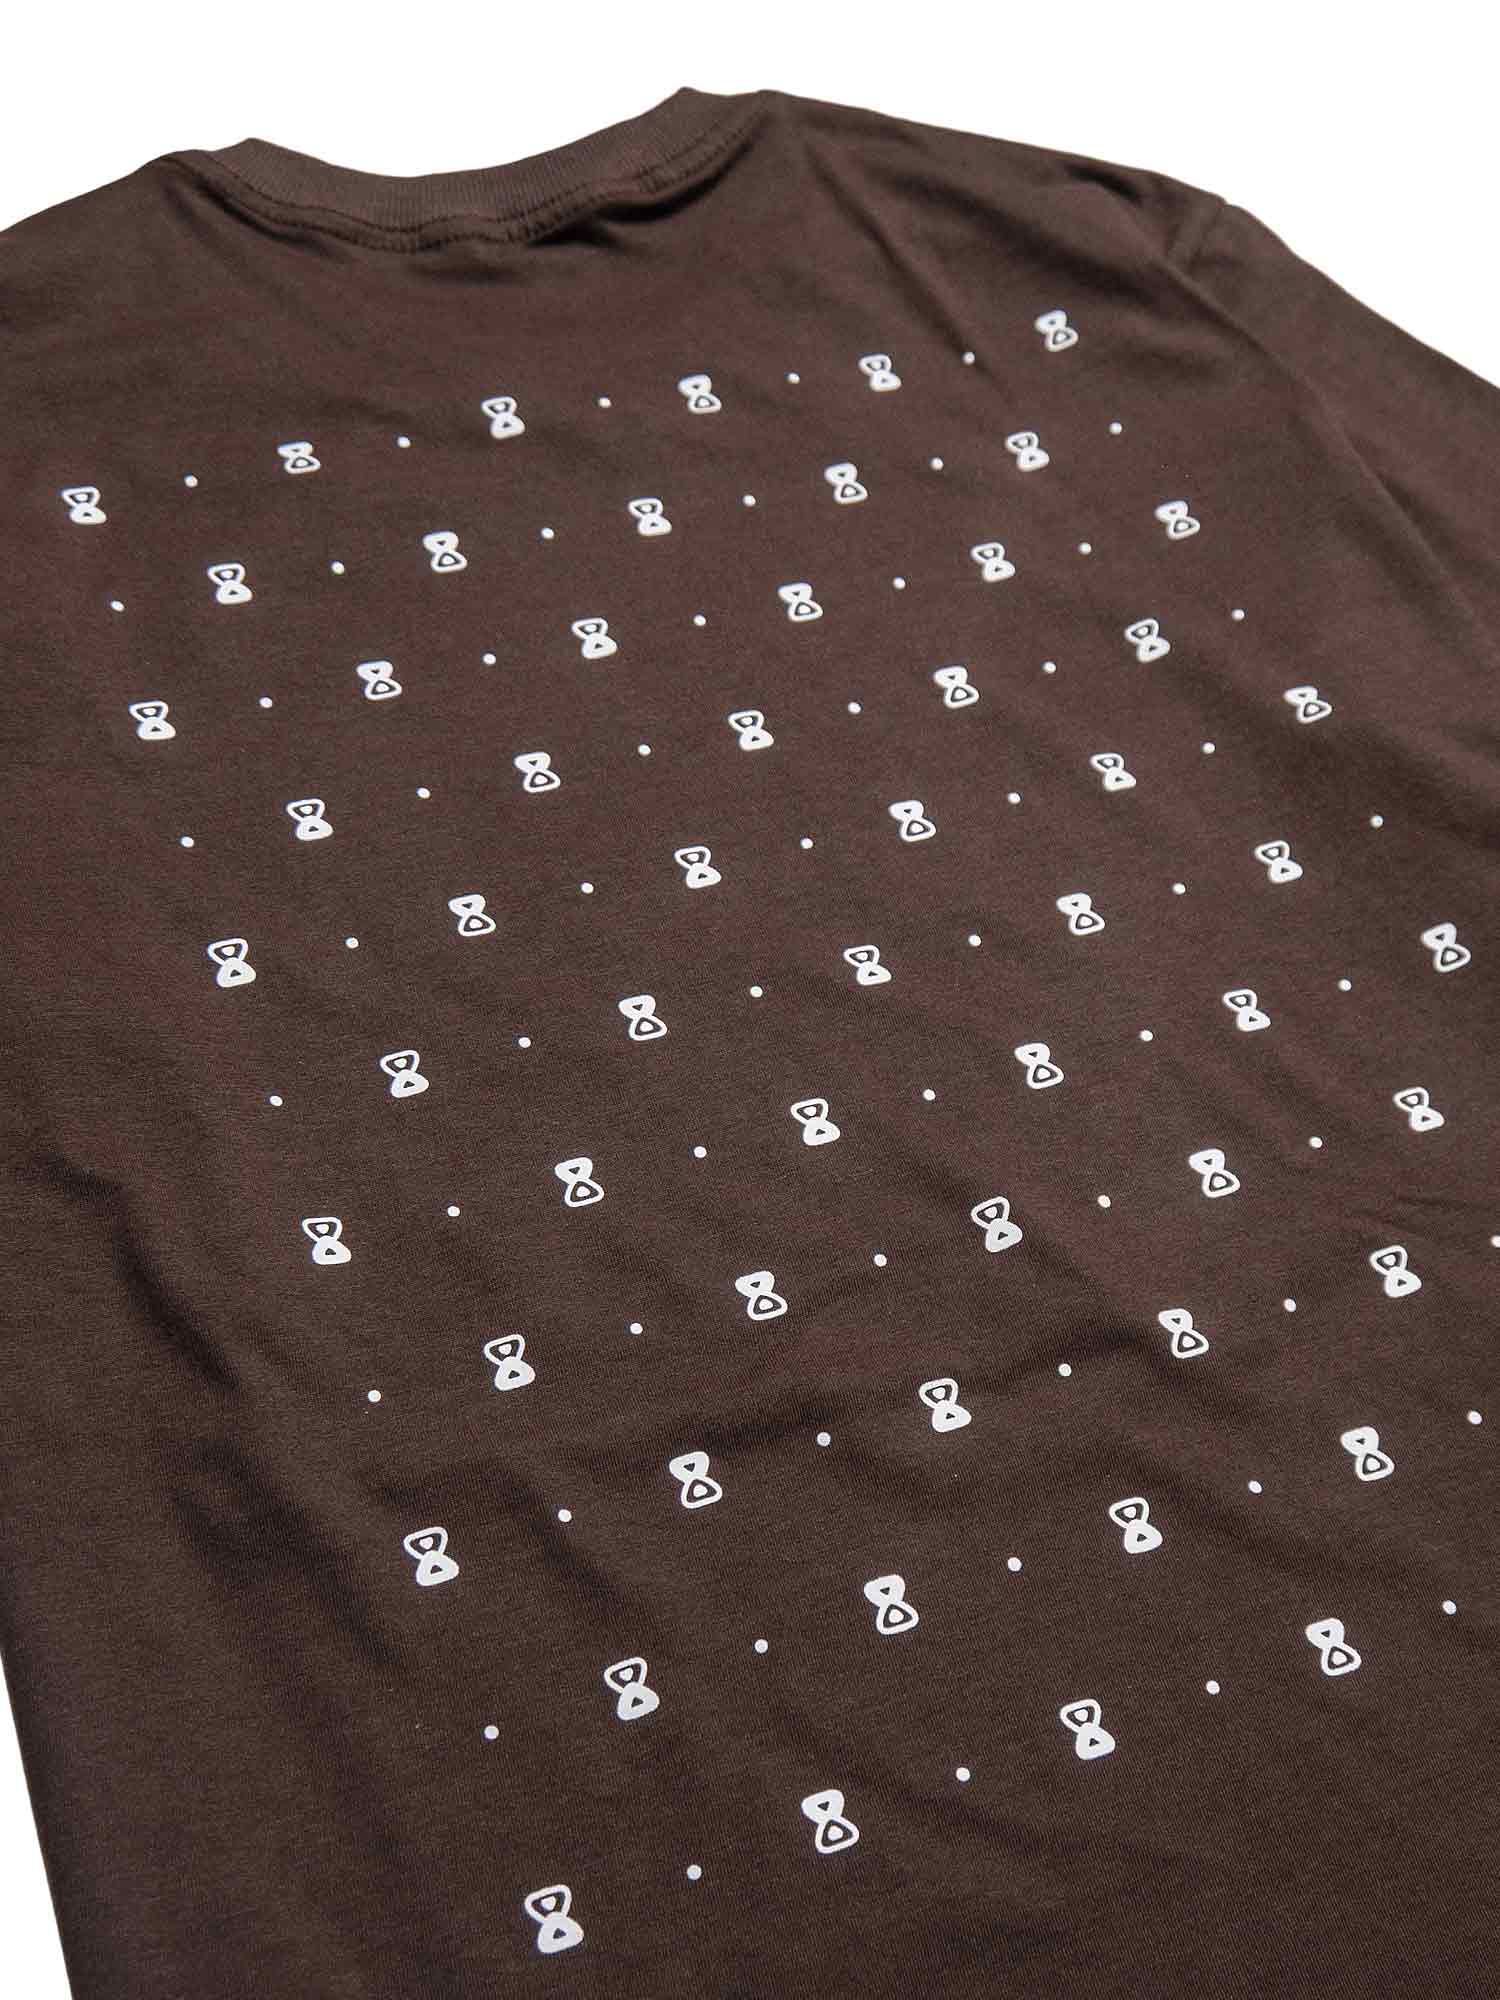 Camiseta-Future-Texturized-Marrom-Costas-Close